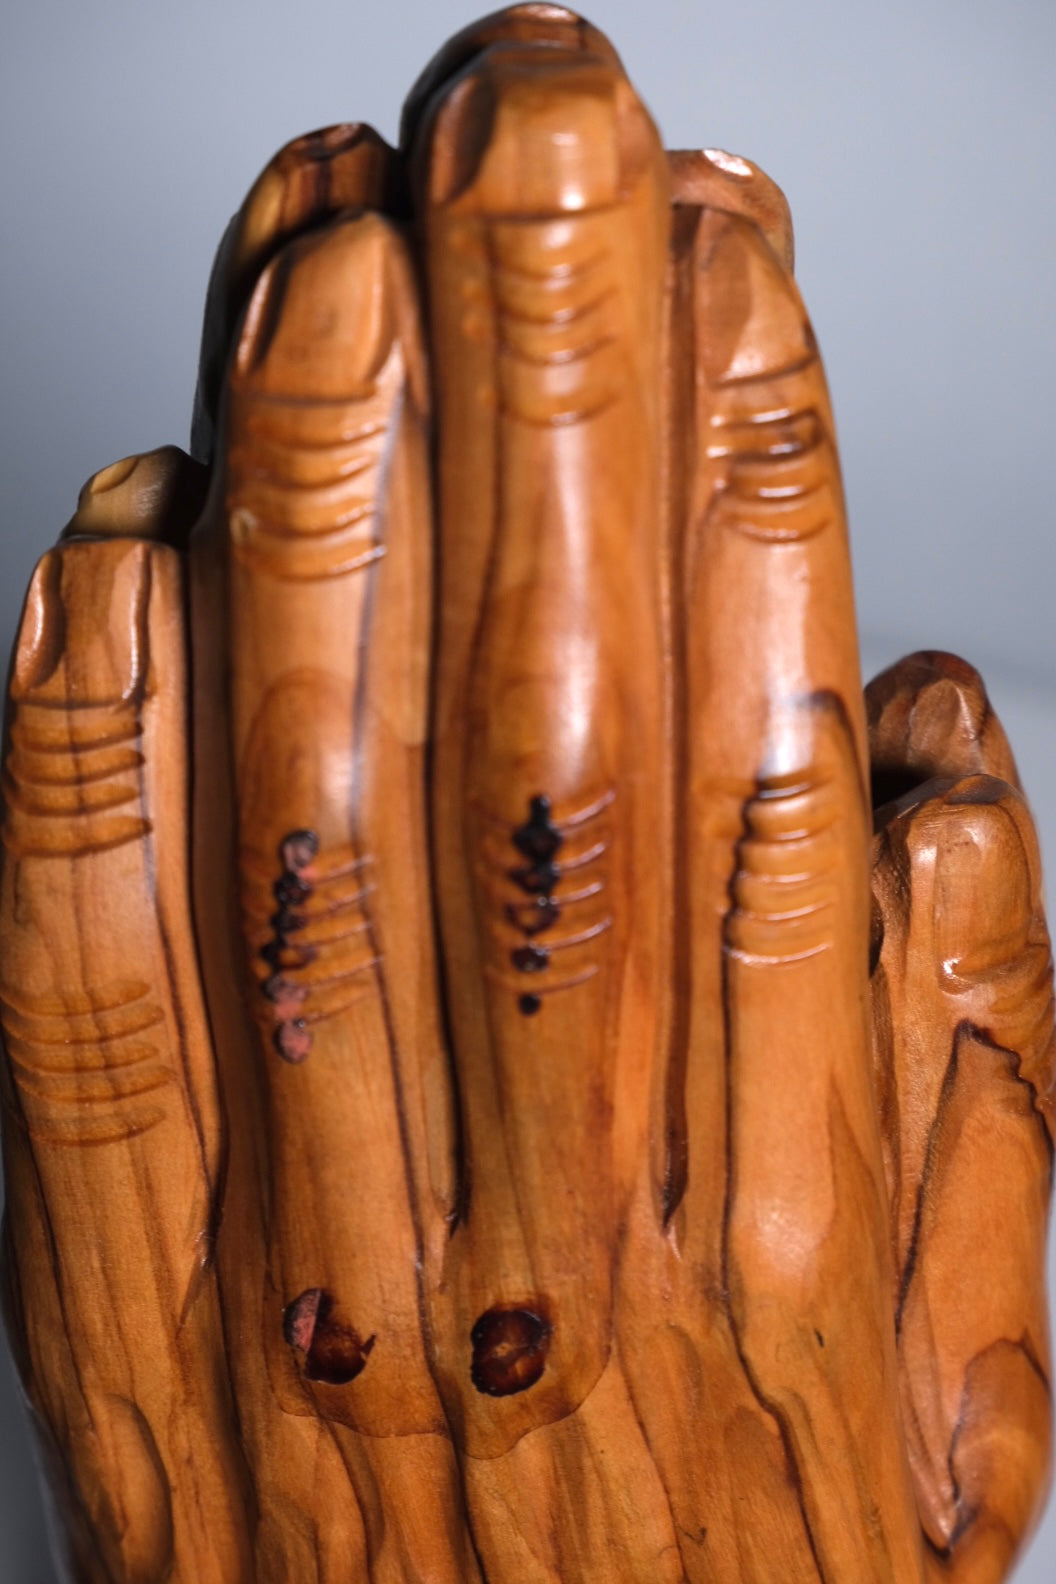 Olive Wood Carving Praying Hands (Vintage)